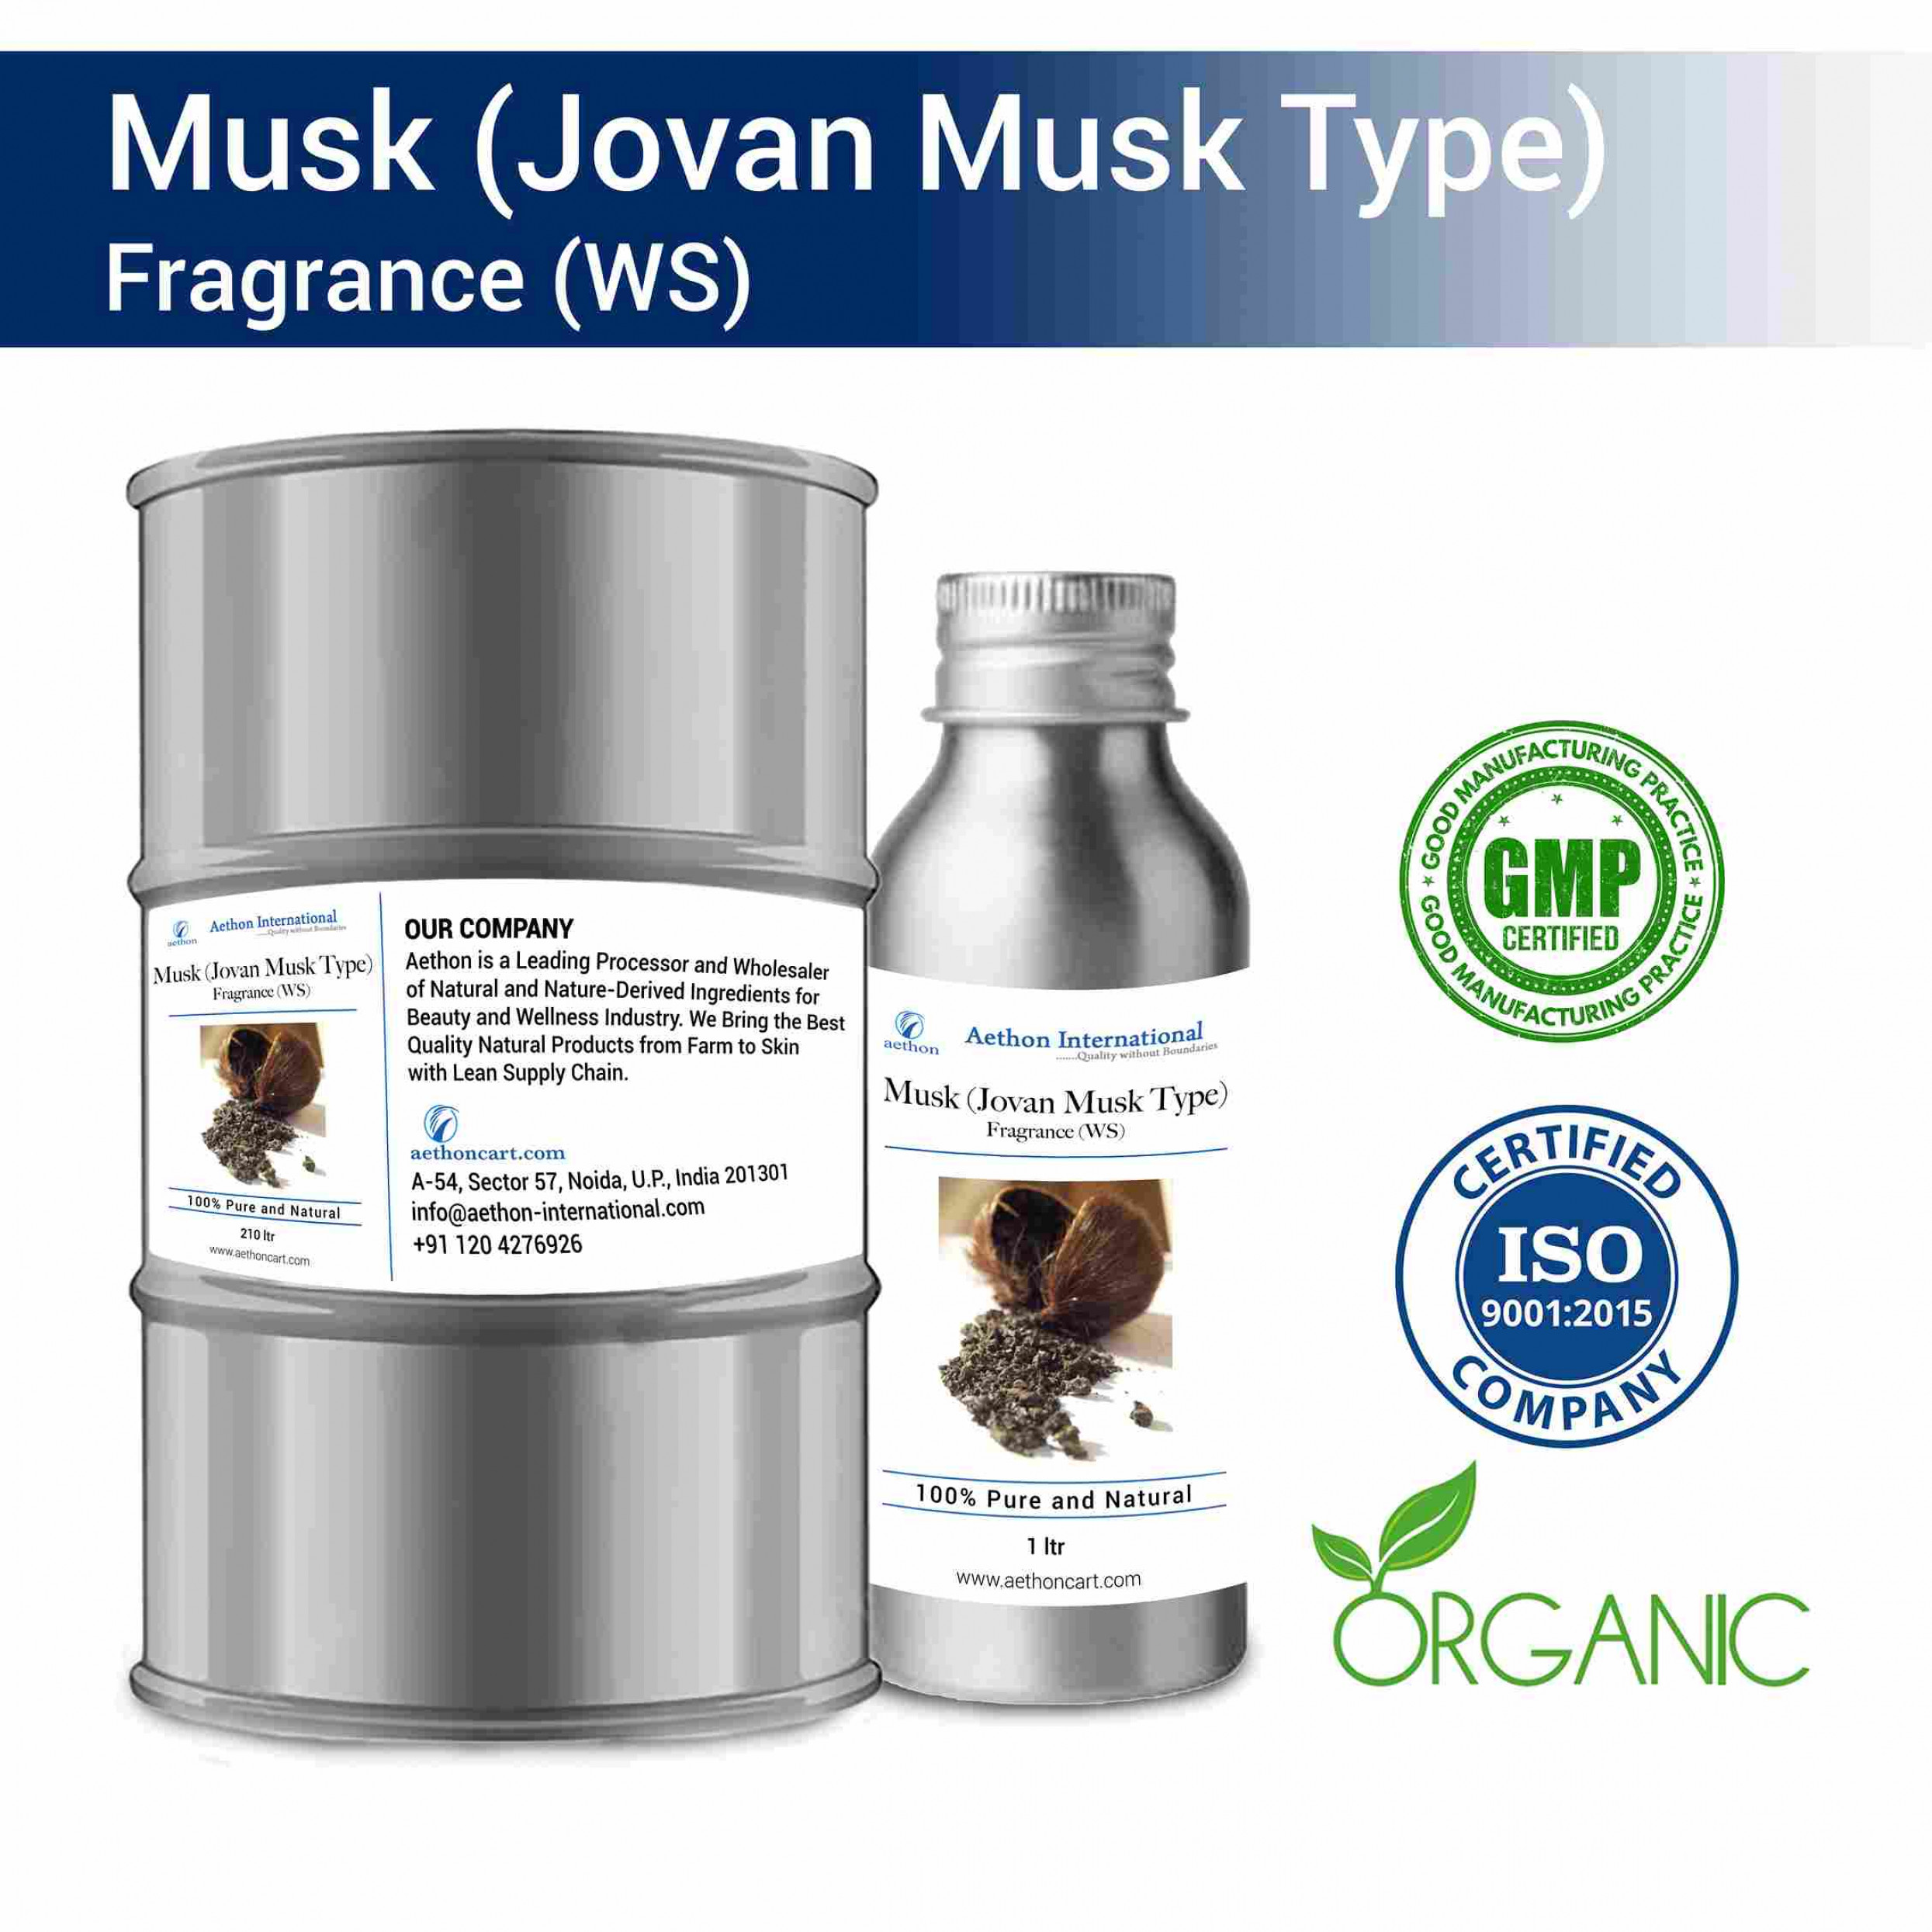 Musk (Jovan Musk Type) Fragrance (WS)